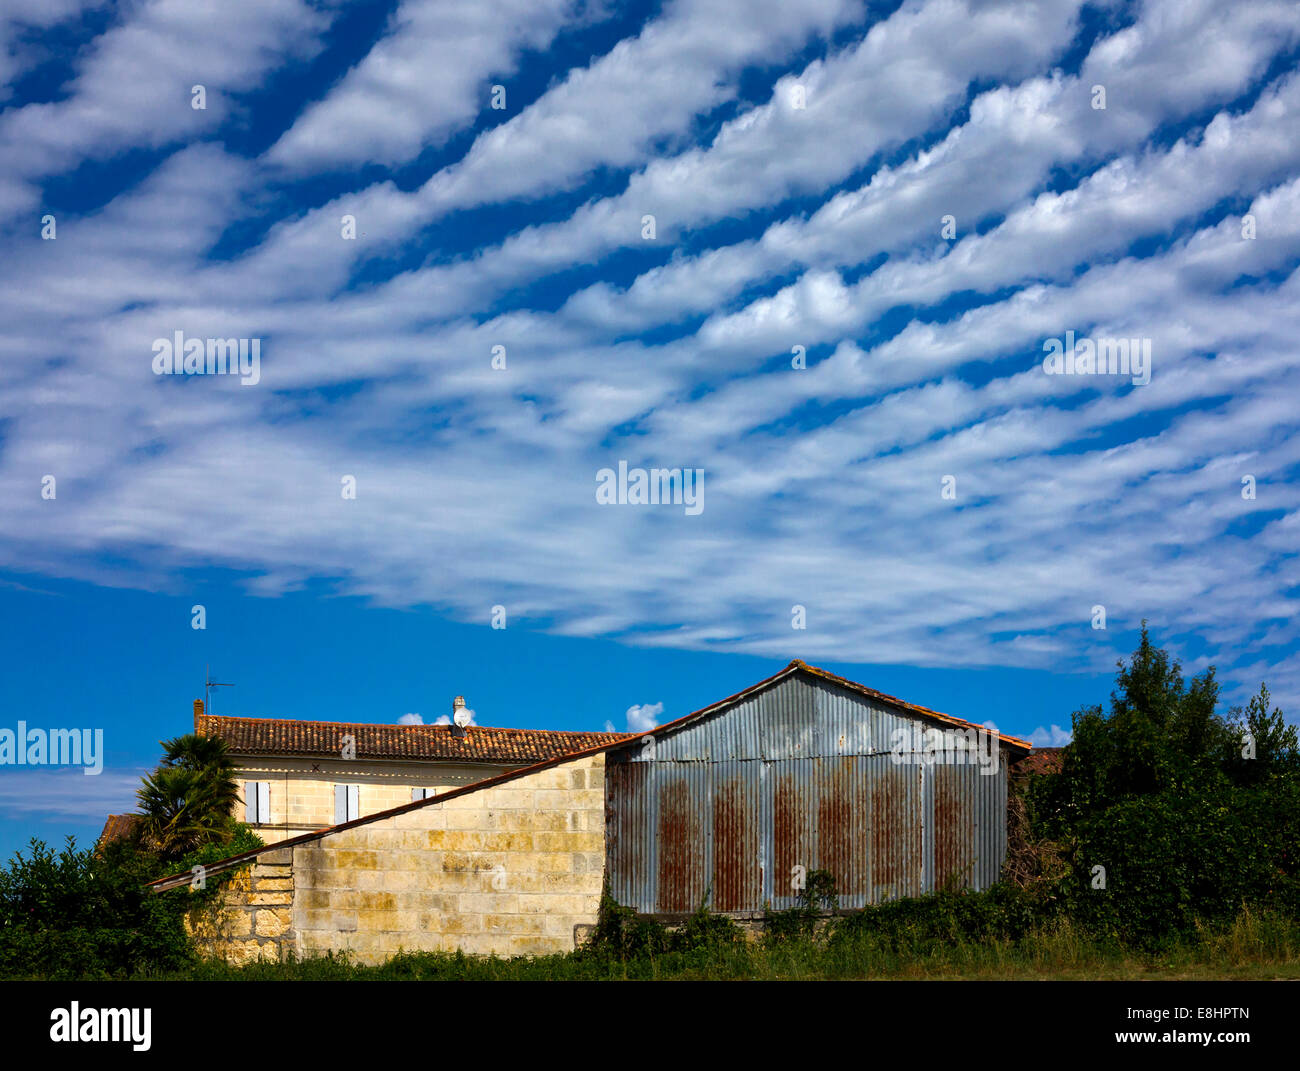 Les cirrus dans un motif à rayures typiques contre un ciel bleu avec des bâtiments de ferme ci-dessous Banque D'Images